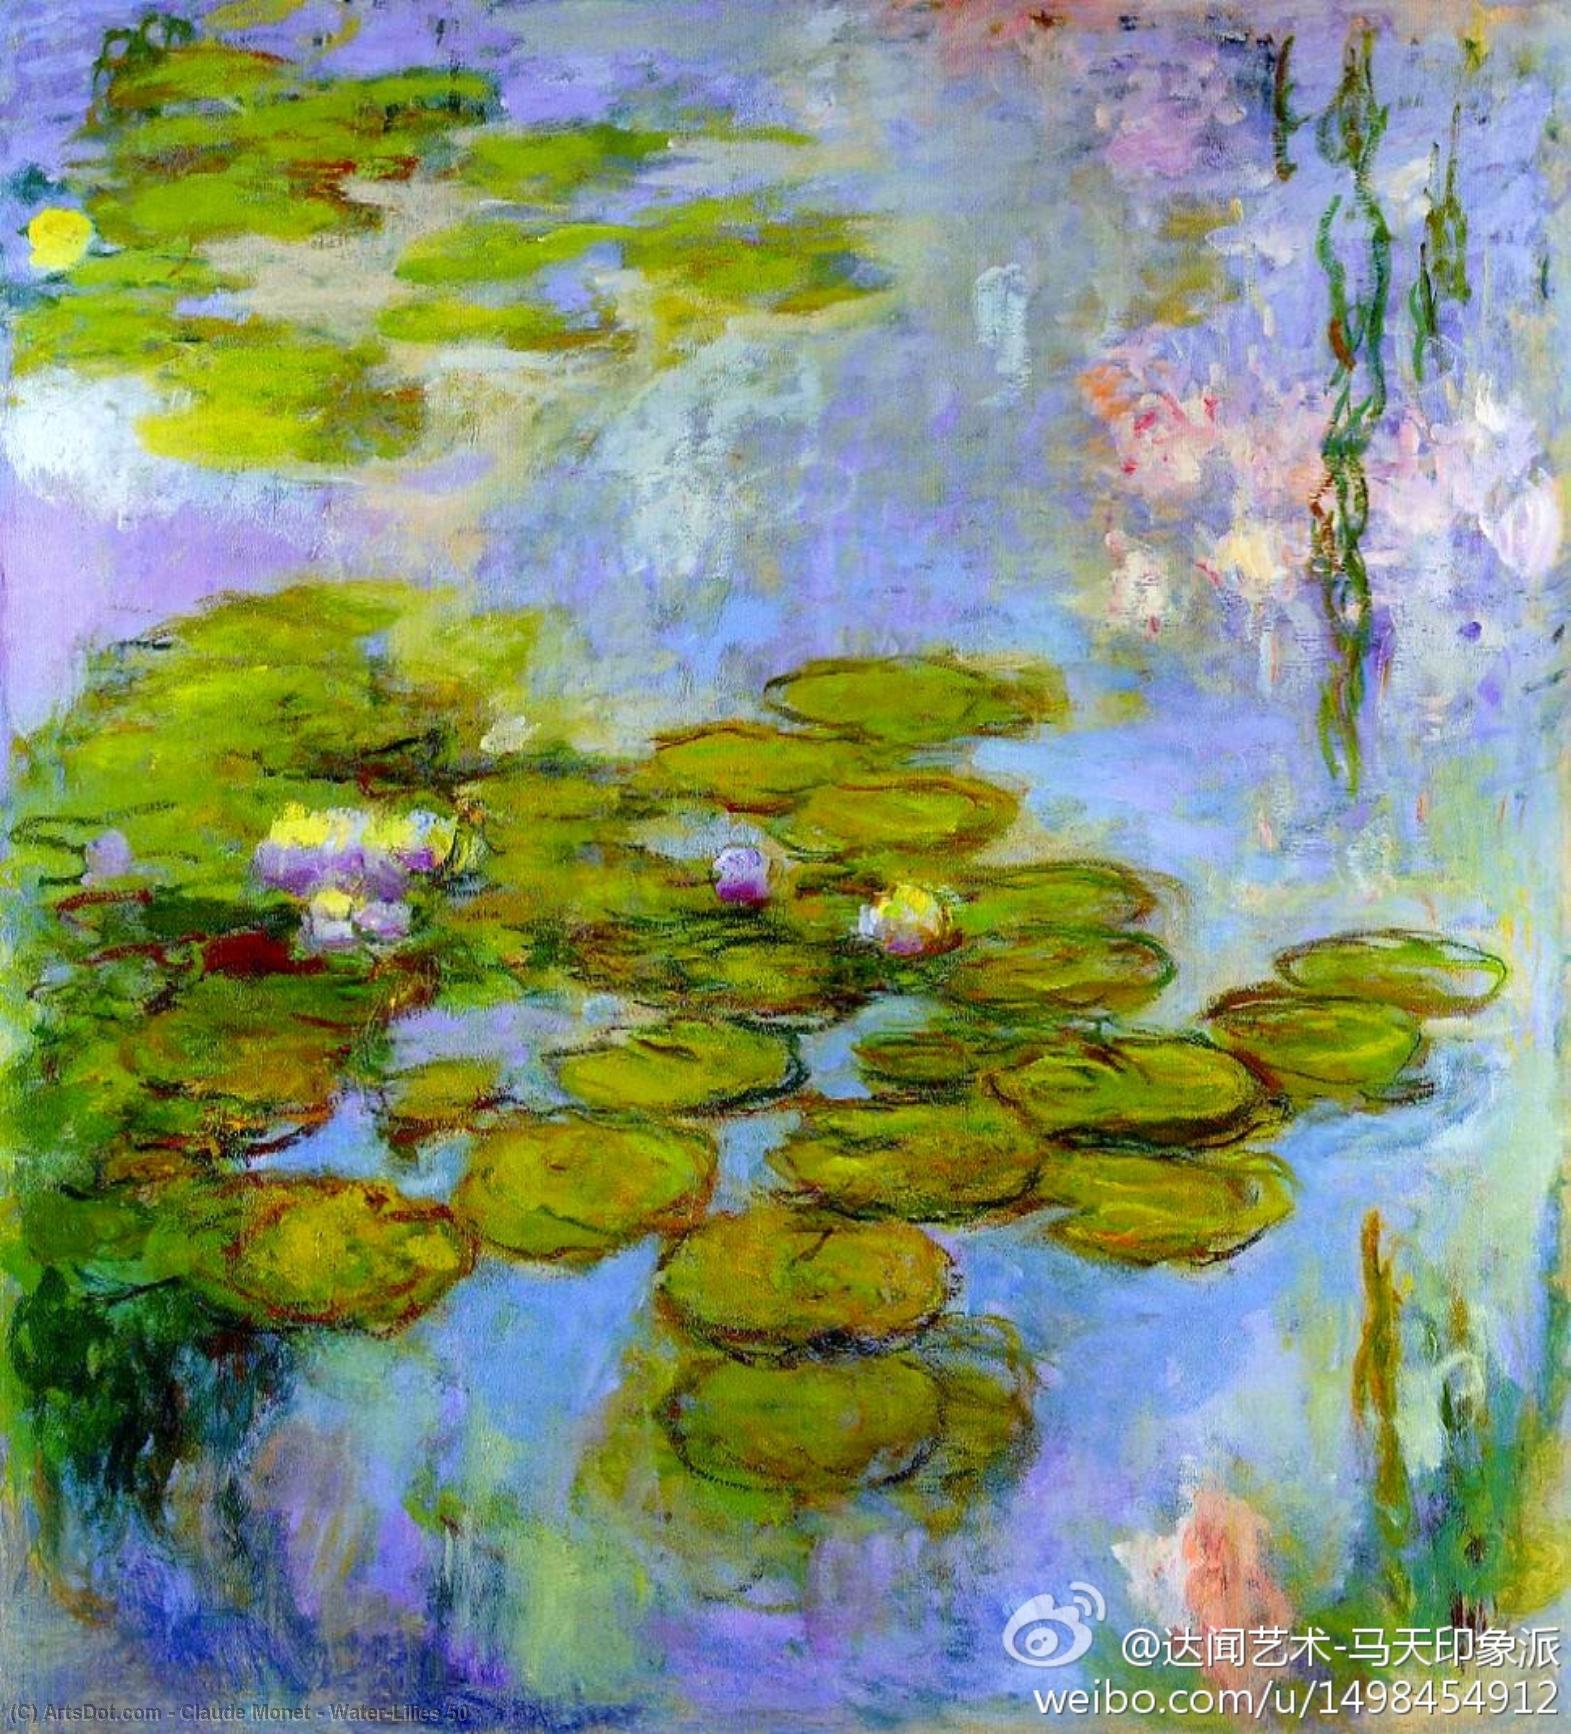 WikiOO.org - Enciklopedija likovnih umjetnosti - Slikarstvo, umjetnička djela Claude Monet - Water-Lilies 50